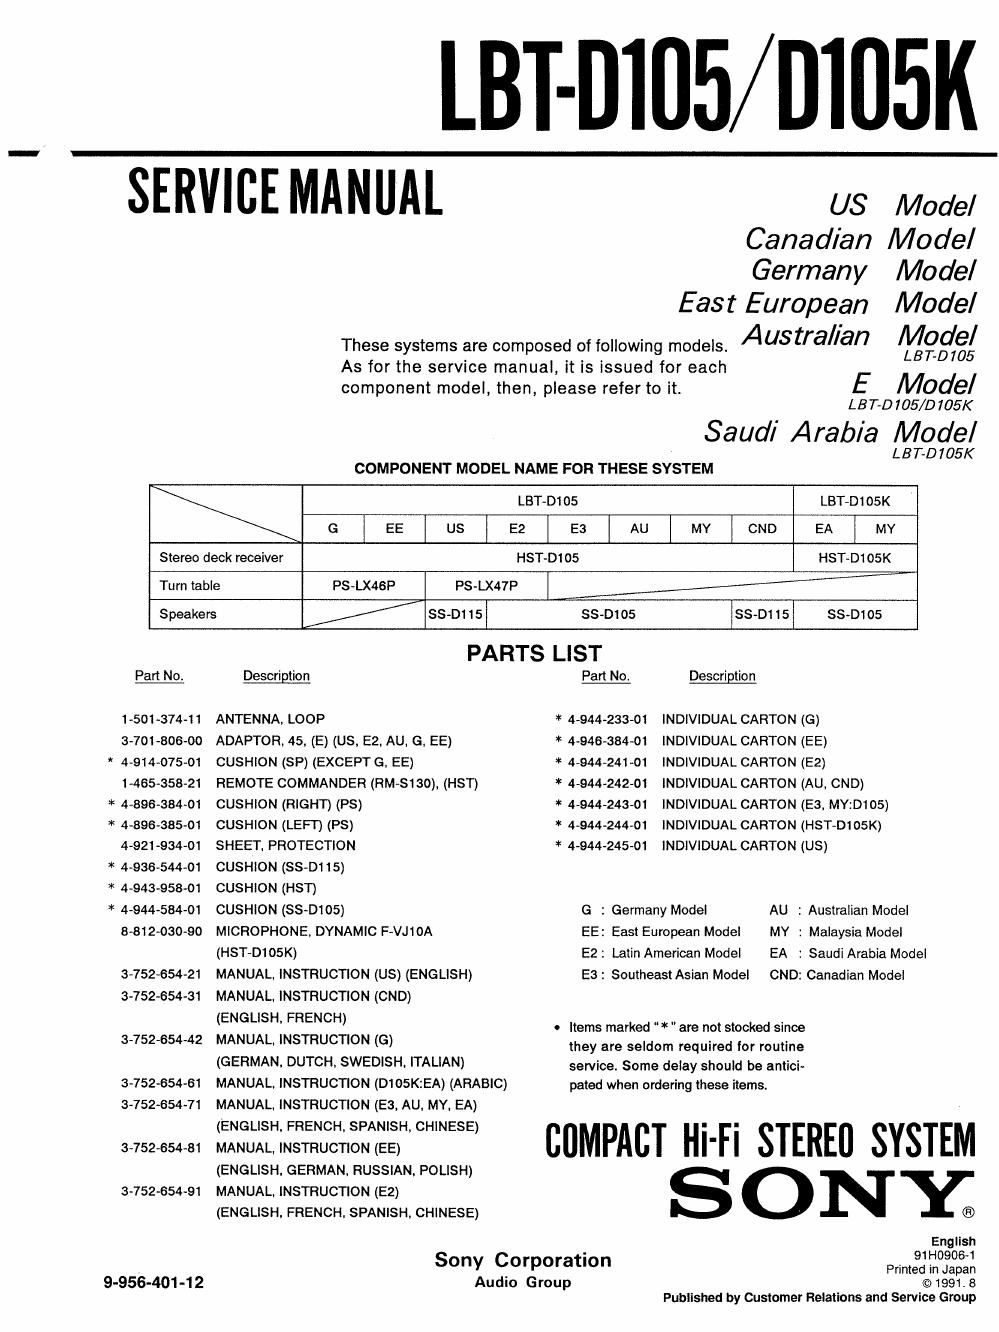 sony lbt d 105 k service manual